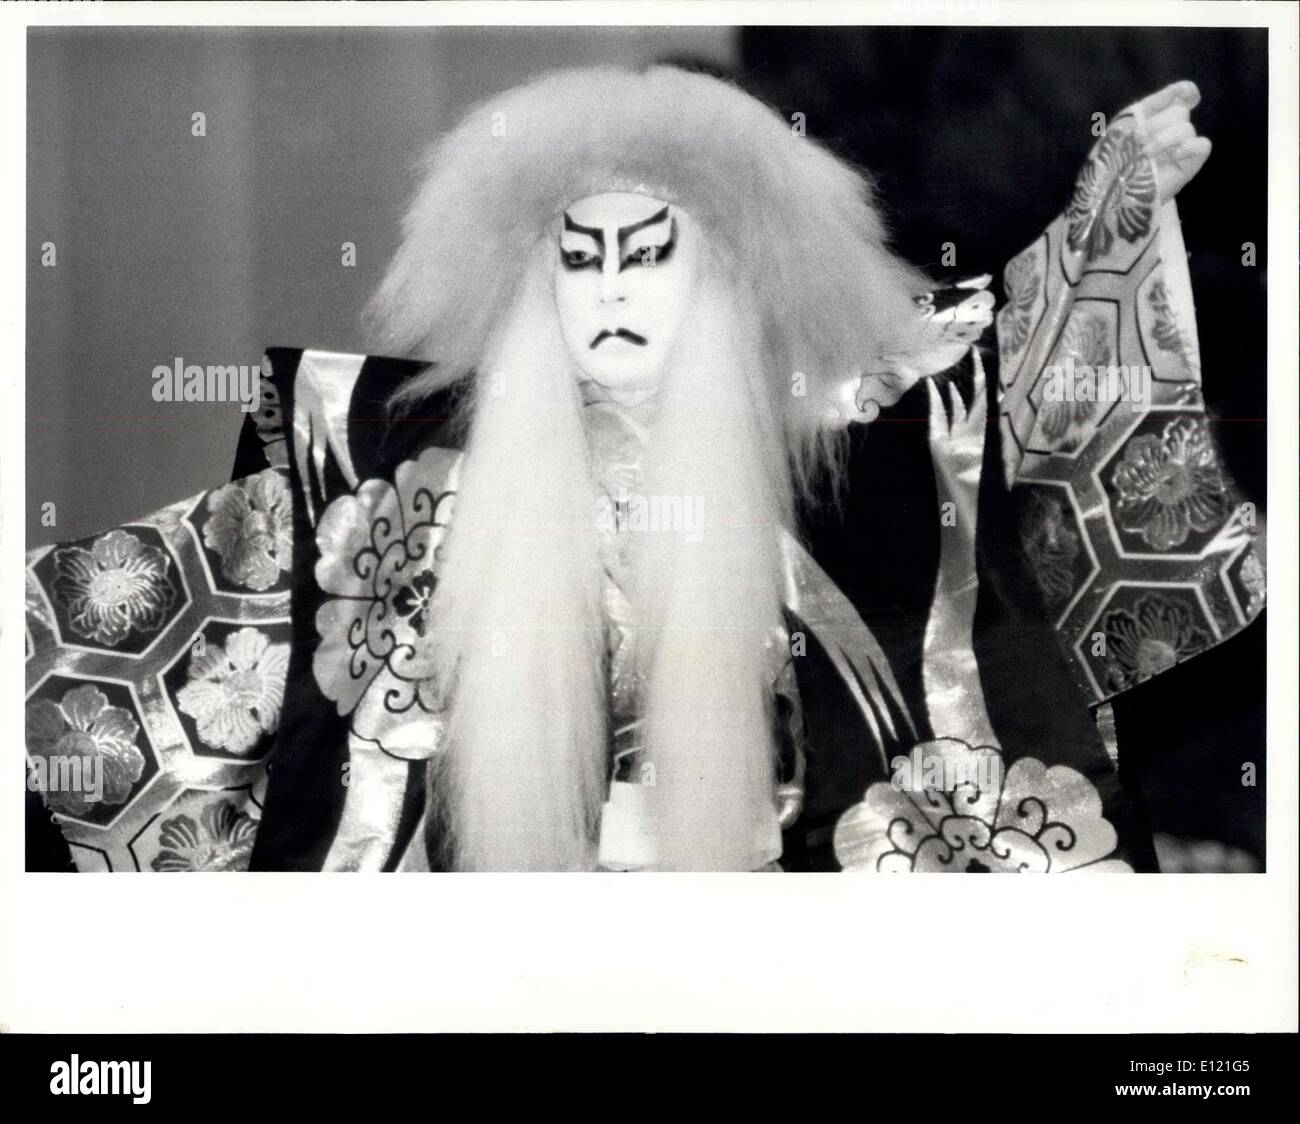 Le 19 octobre 1981 - Le théâtre Kabuki au Sadlers Wells : Ichikawa Ennosuke III, qui a dirigé l'entreprise sur ses succès sensationnel dernière visite, et est rouge pour être plus beaux du Japon, acteur de Kabuki se traduiront l'entreprise forte de 56 comédiens qui fera une rare visite à Sadlers Wells pour une saison d'une semaine du 19 au 24 panier du Japon en Grande-Bretagne année. Ichikawa Ennosuke III montre la photo, le célèbre acteur de Kabuki japonais à Londres aujourd'hui. Banque D'Images